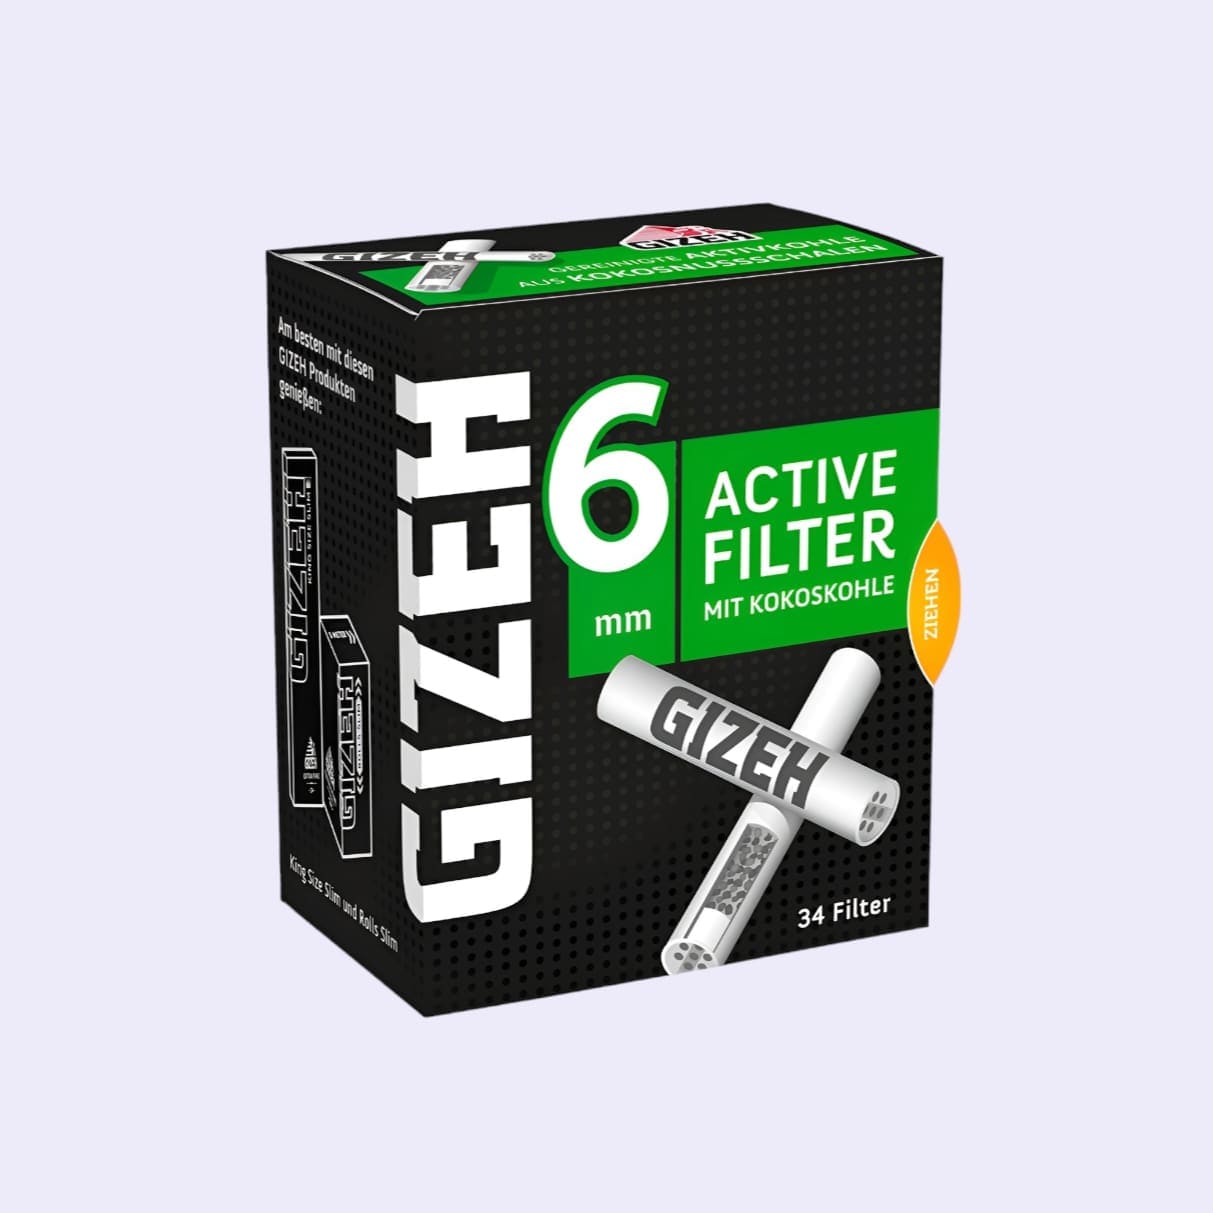 Dieses Bild zeigt die GIZEH Active Filter 6mm 34pcs